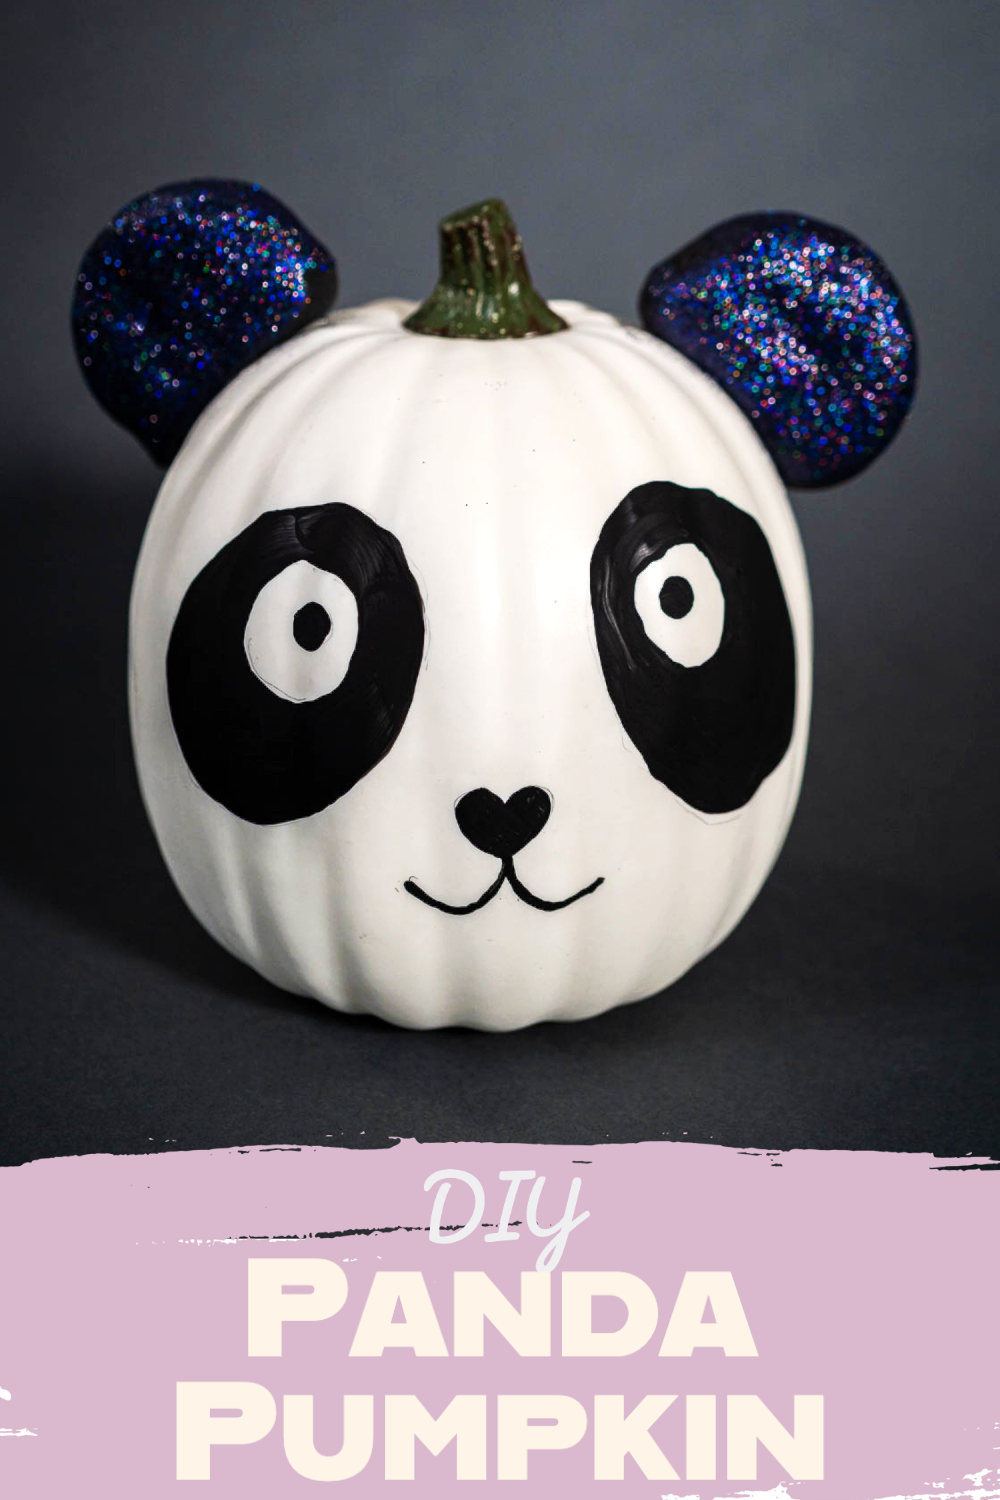 DIY Panda Pumpkin